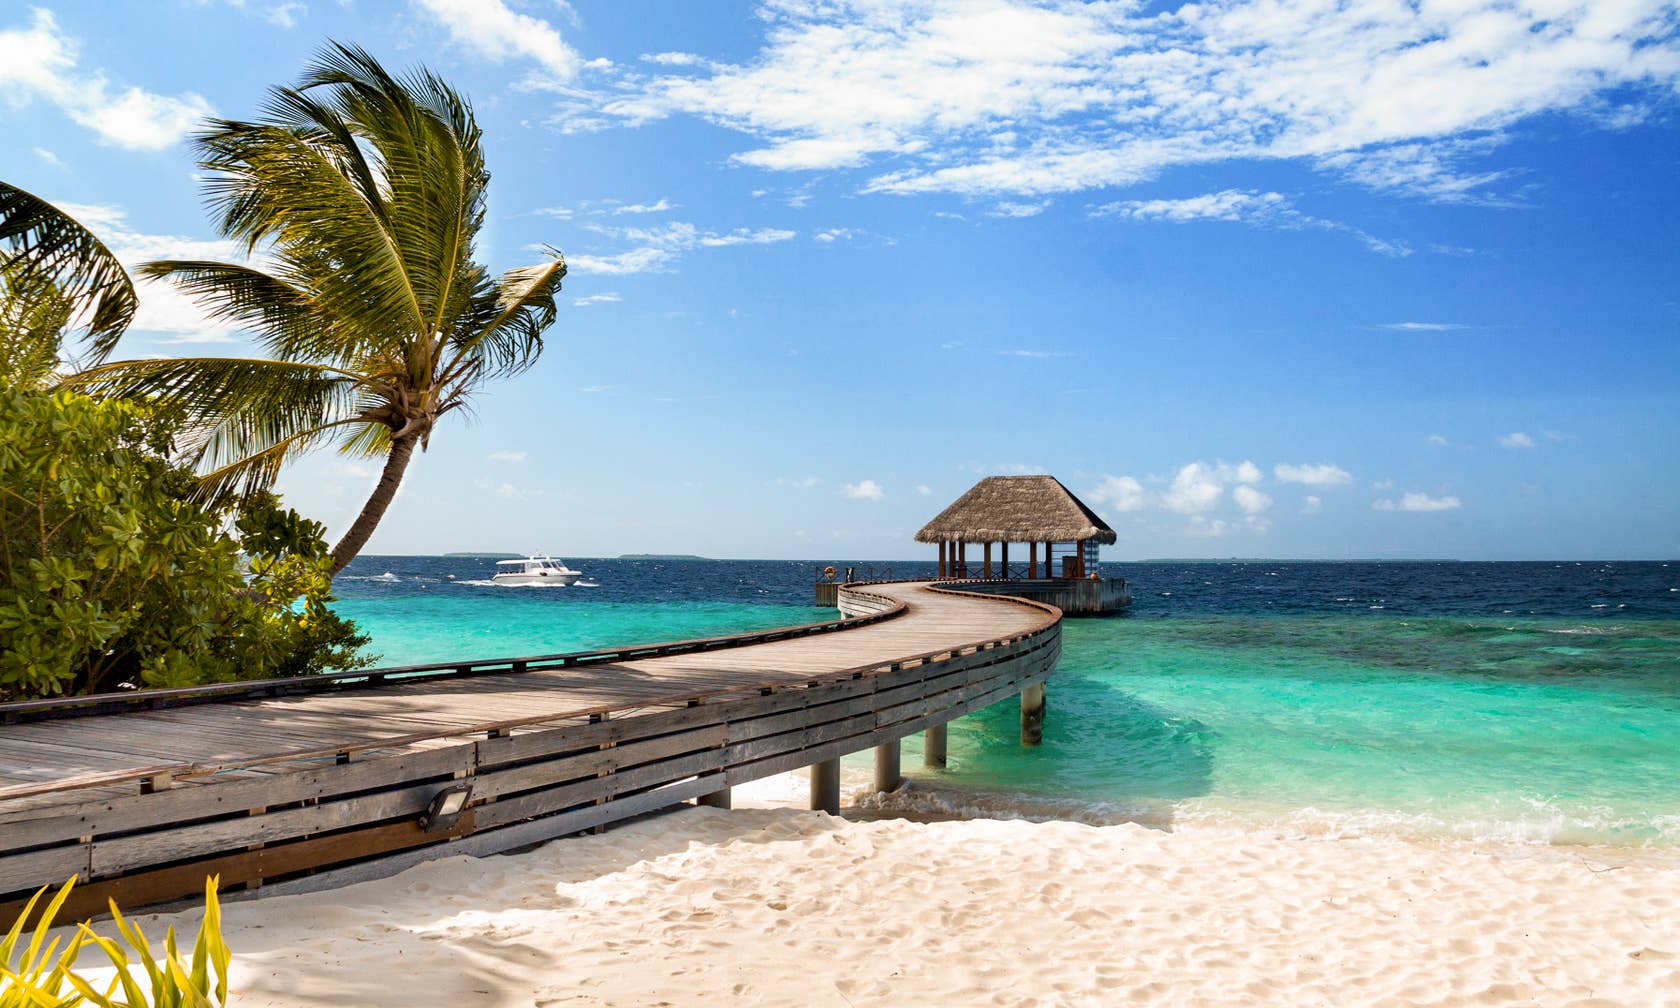 Ενοικιαζόμενοι χώροι για διακοπές στην τοποθεσία Μαλδίβες